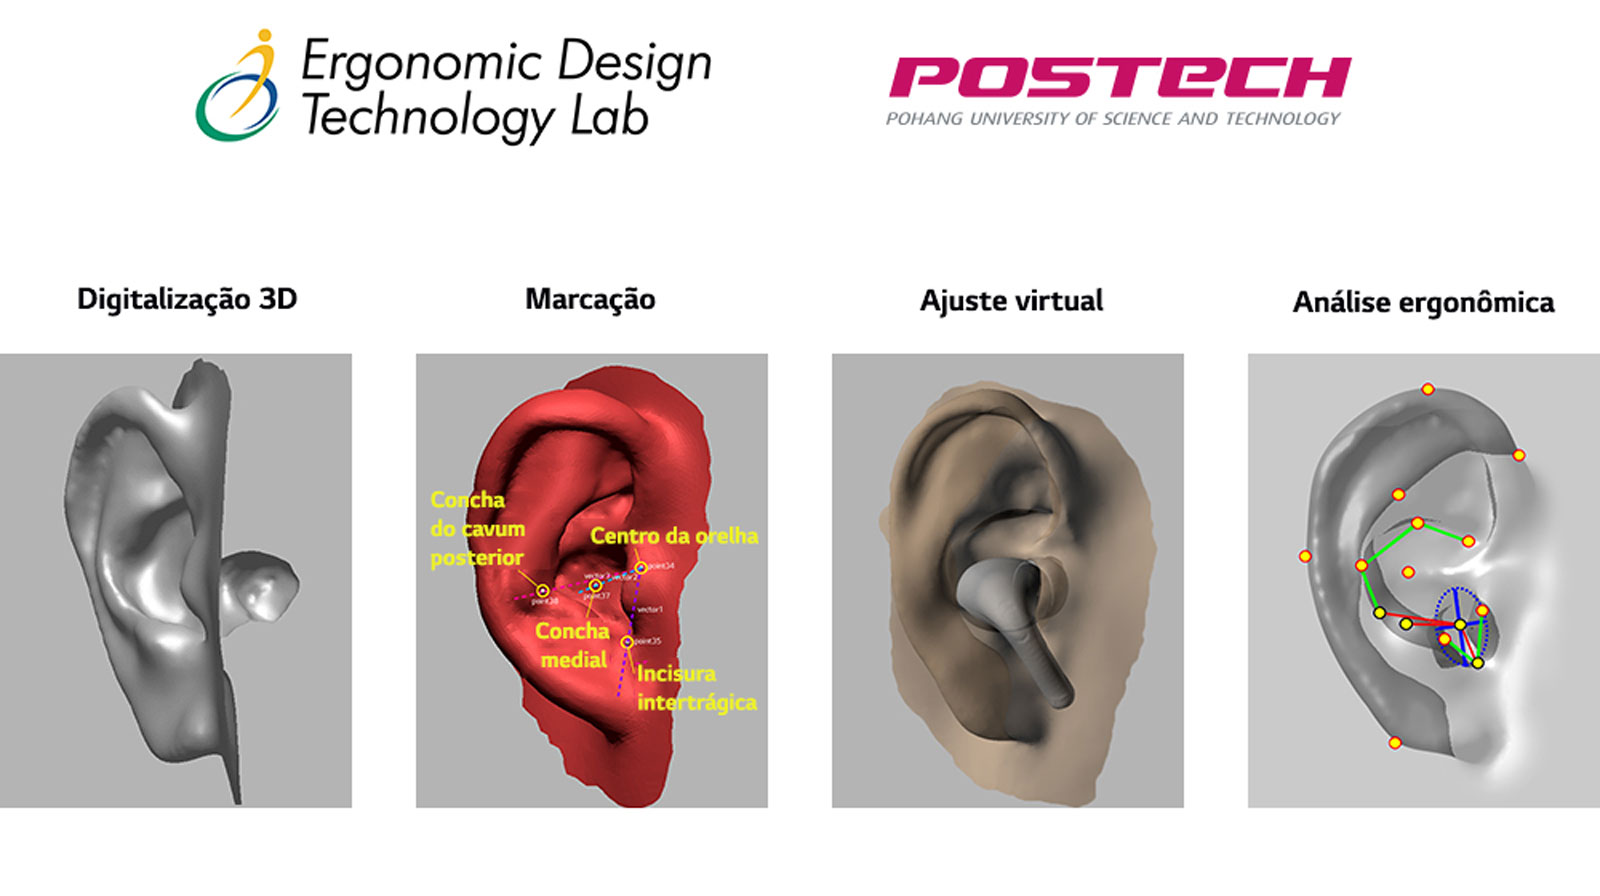 Imagem mostrando o desenvolvimento da modelagem da orelha em 3D em um total de 4 etapas.